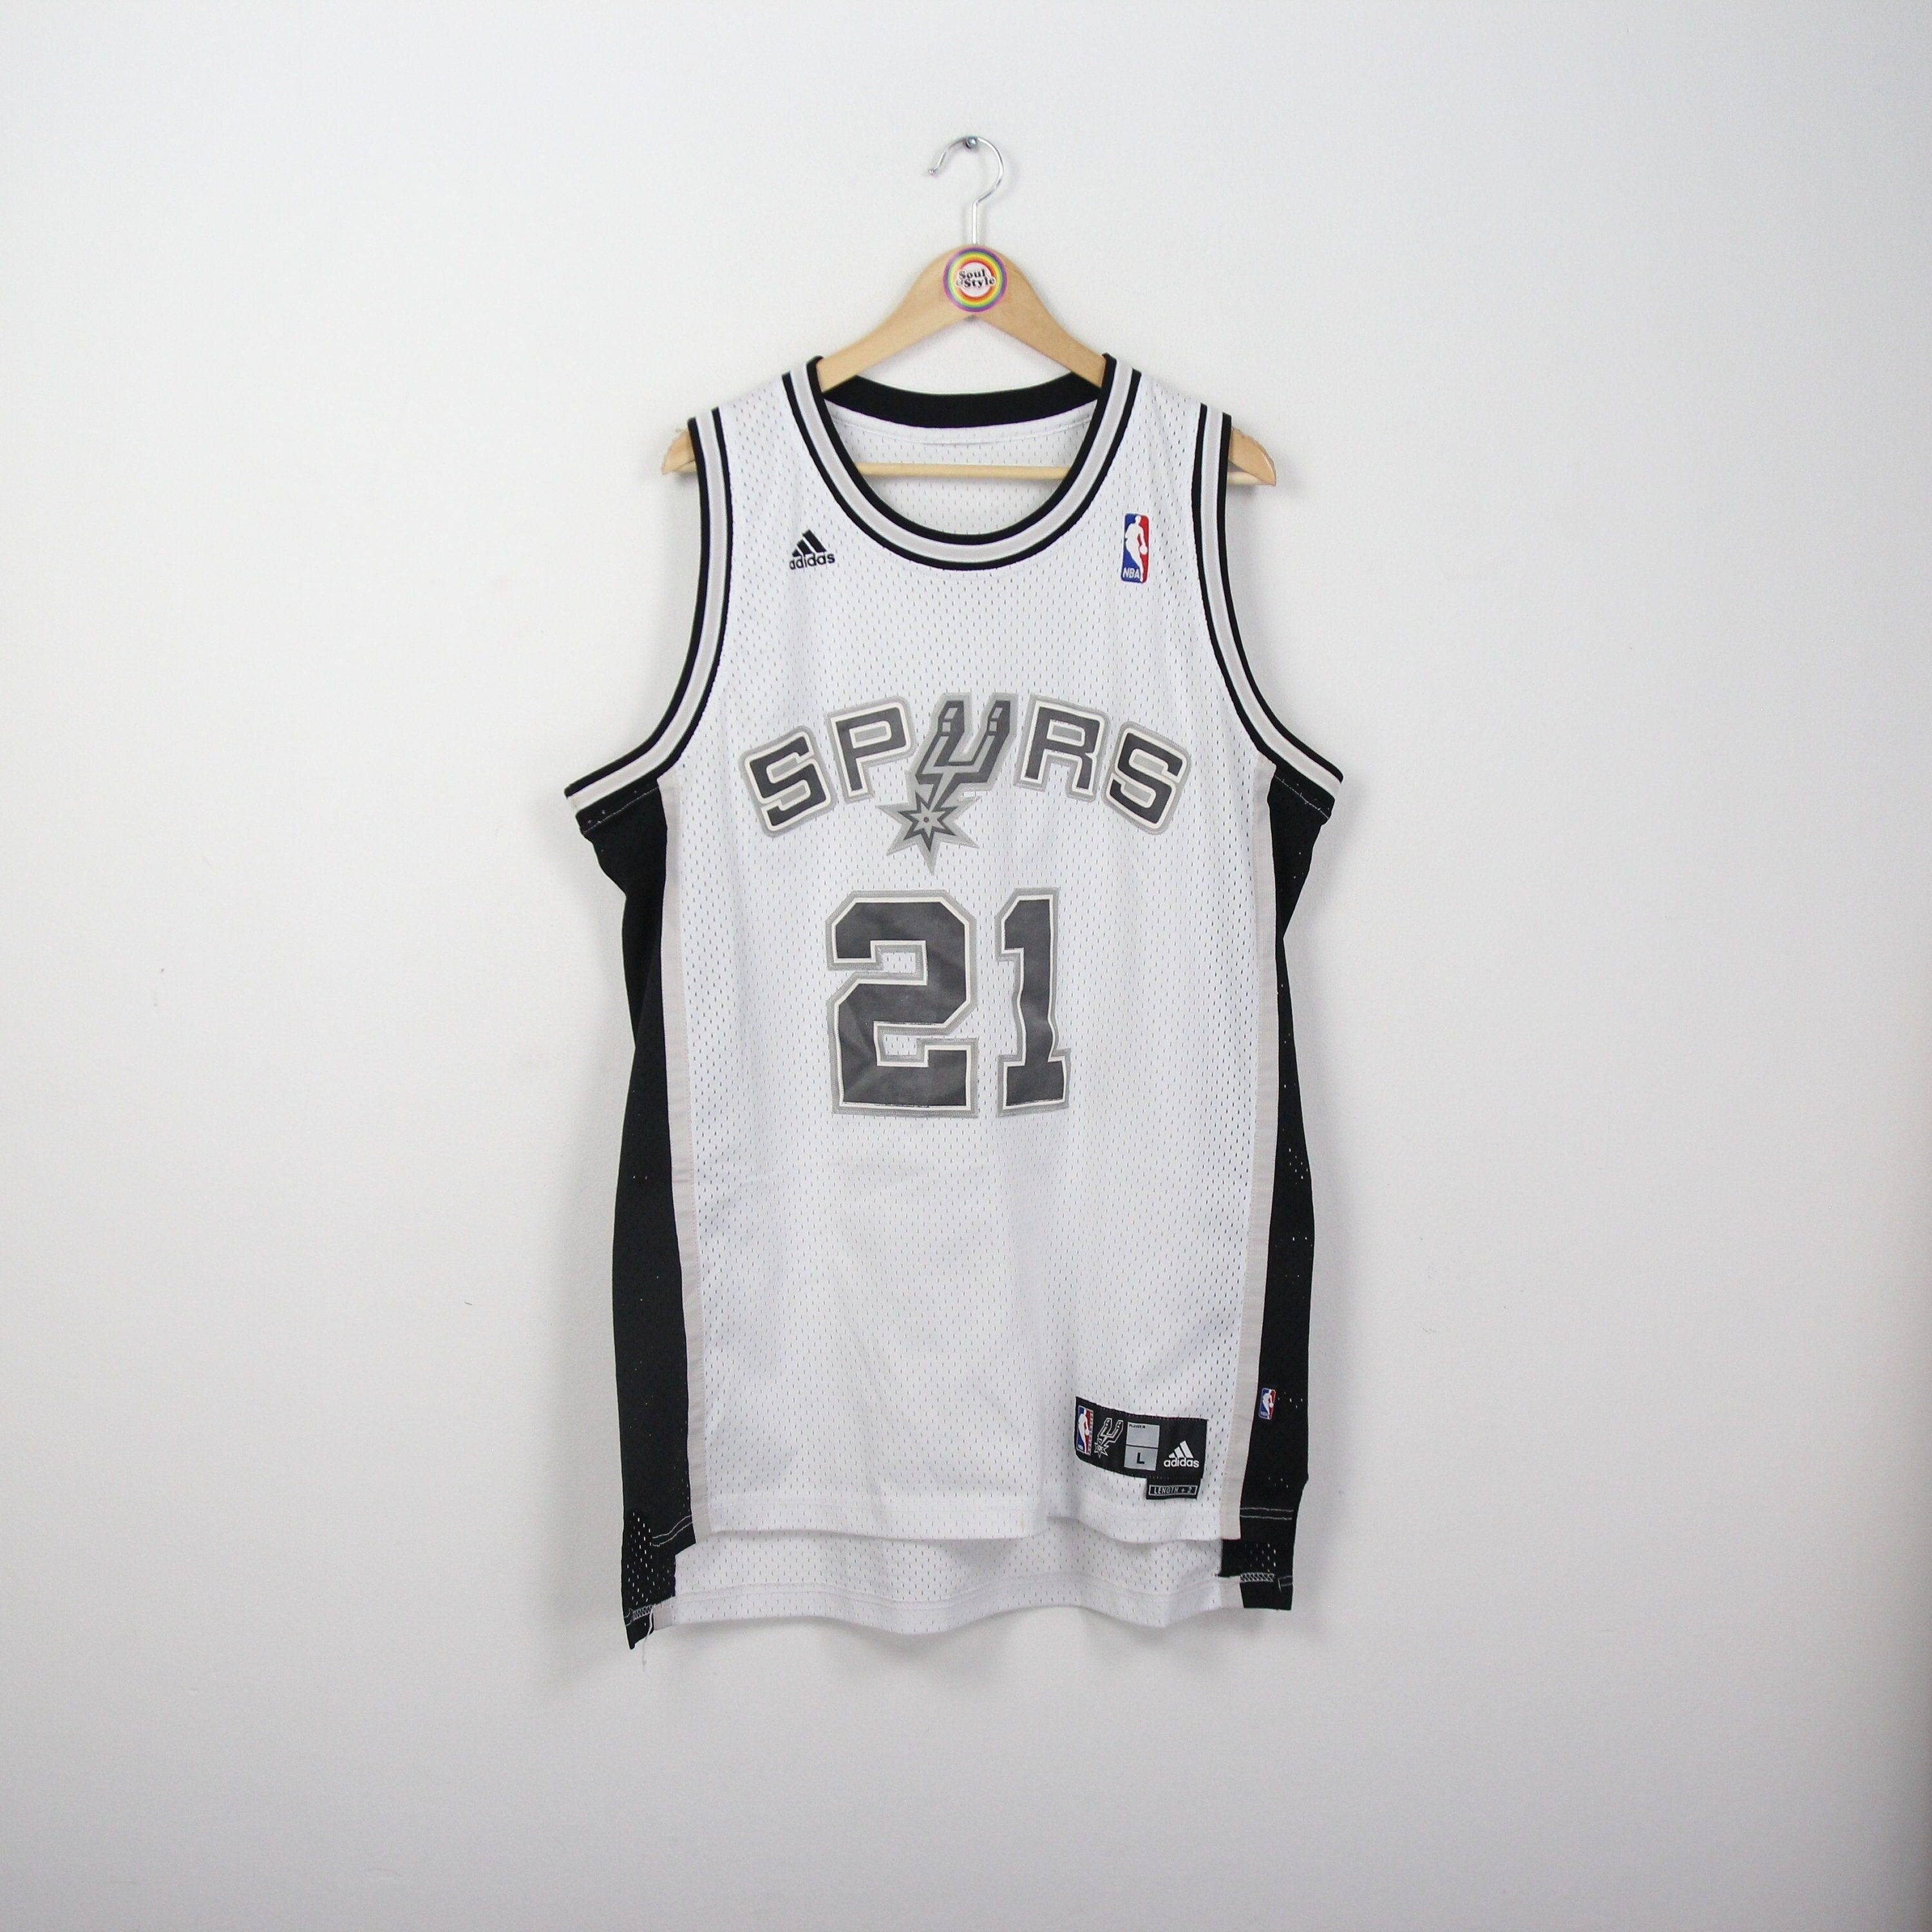 San Antonio Spurs announce 2018-19 Nike City Edition uniform design